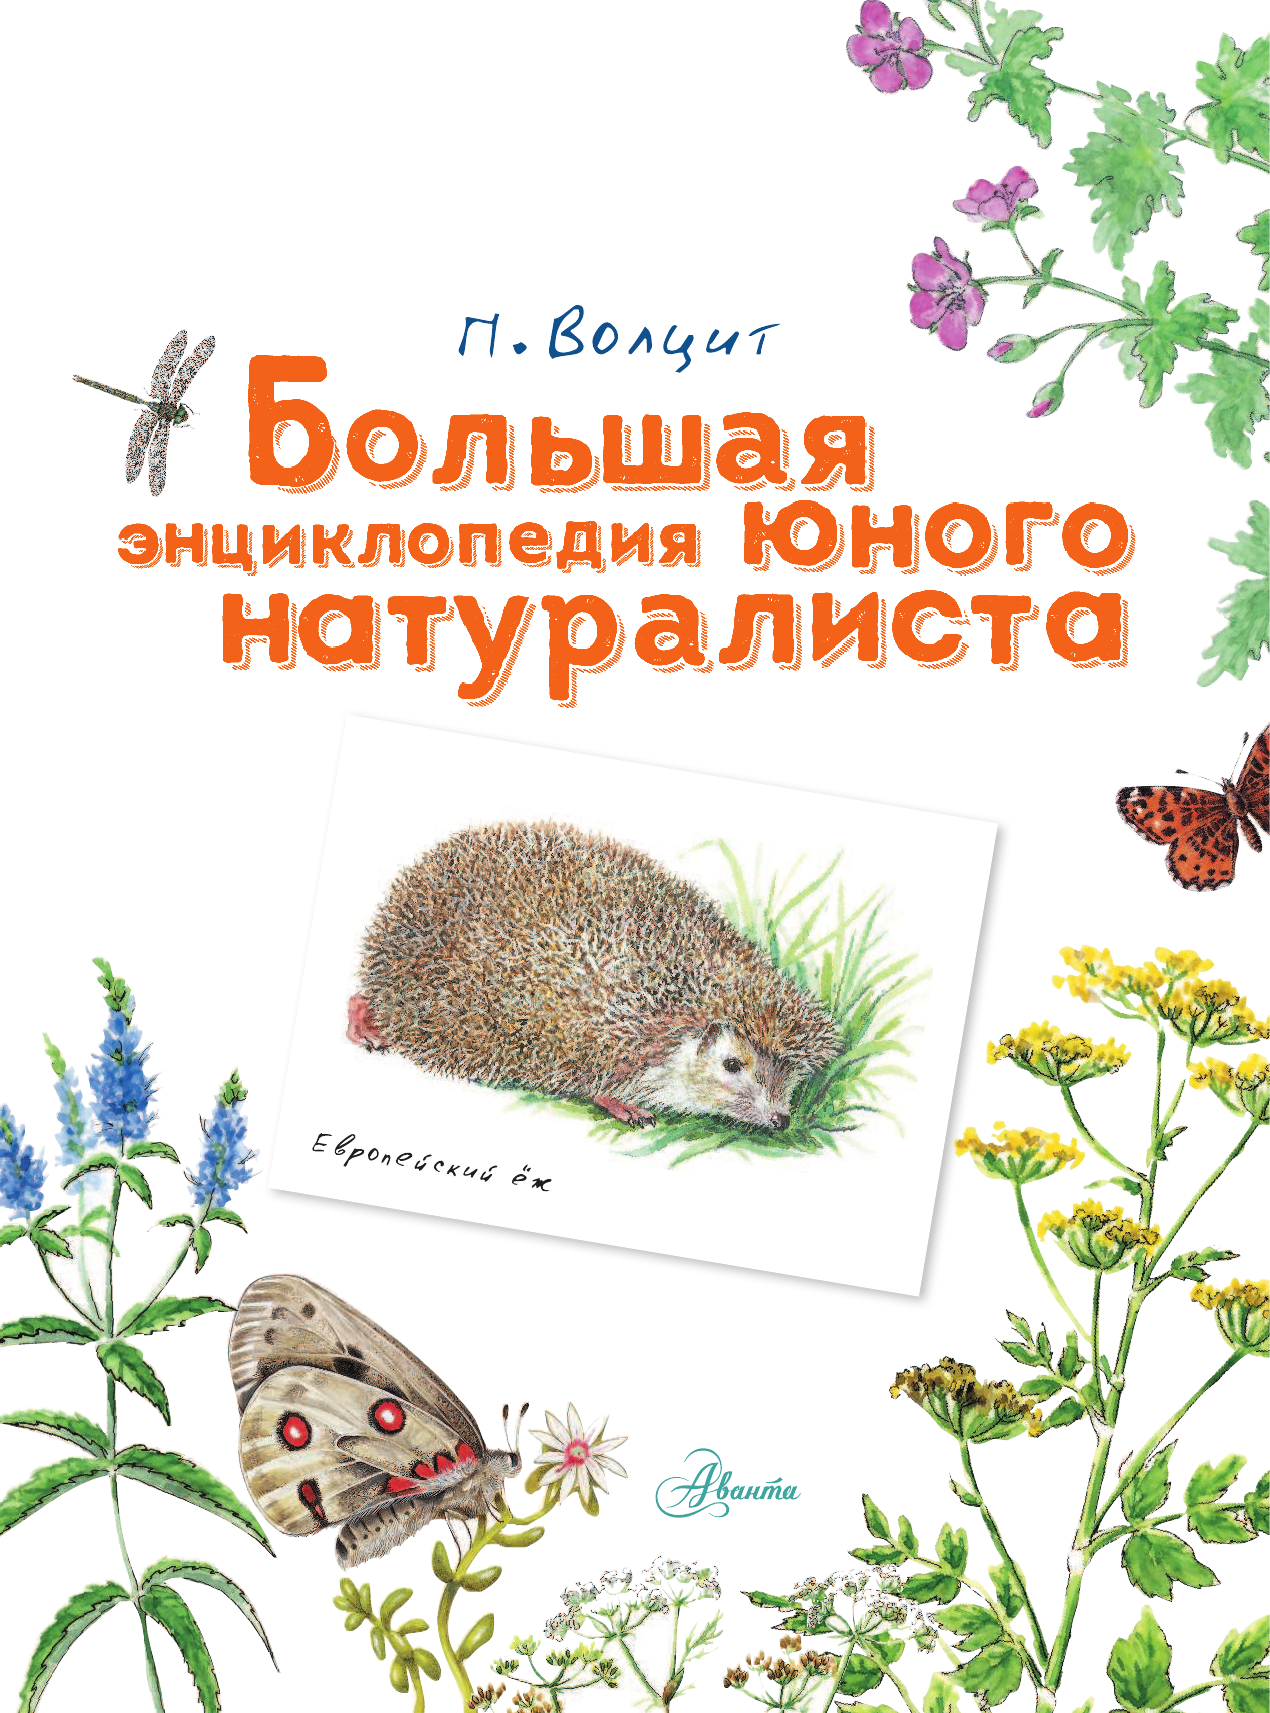  Большая энциклопедия юного натуралиста - страница 2